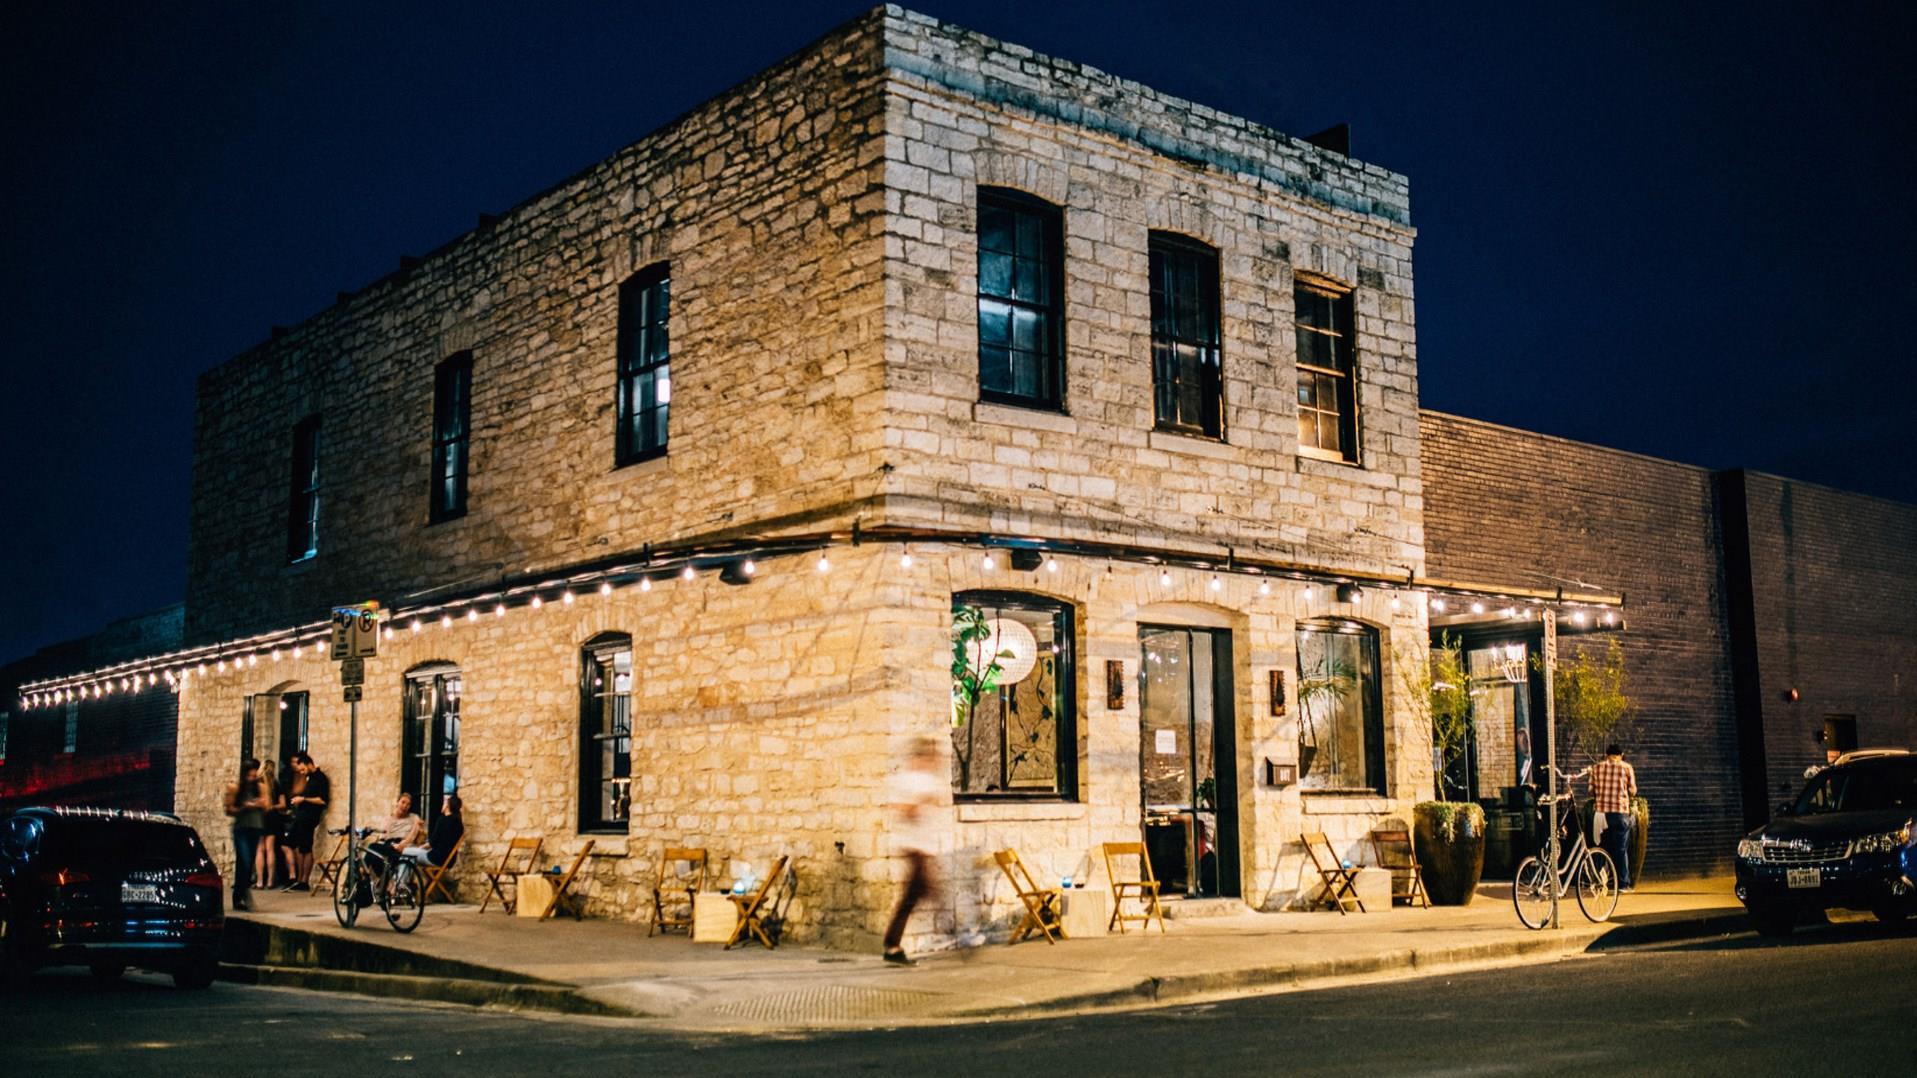 Native Hostel and Bar & Kitchen in Austin, TX